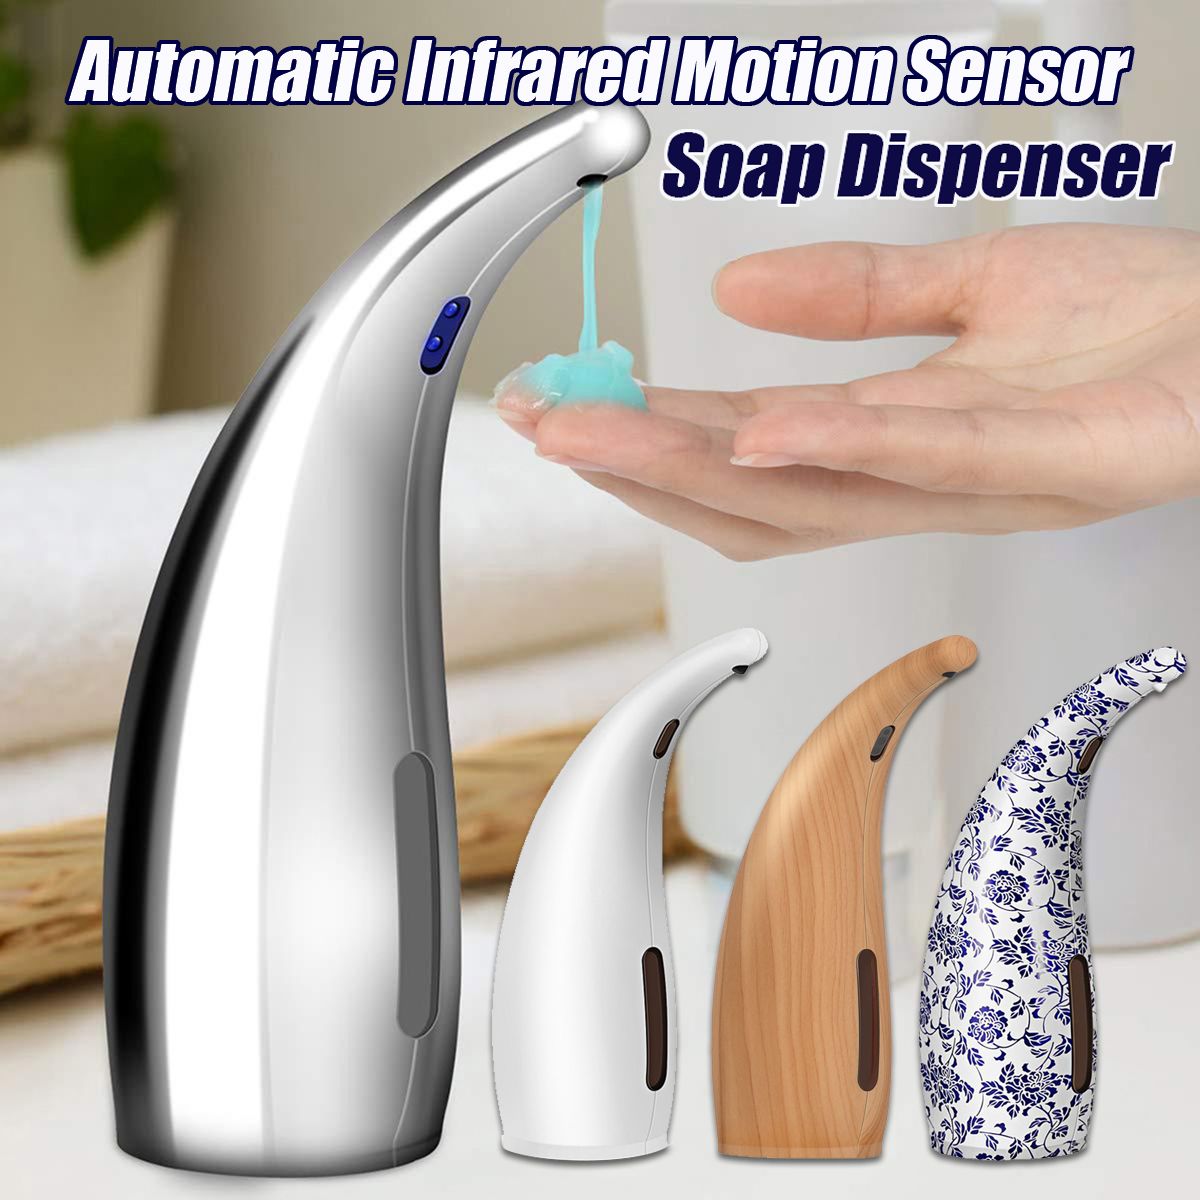 Automatic-Infrared-Motion-Sensor-Hand-Liquid-Soap-Dispenser-Bathroom-Kitchen-ceramic-white-1652313